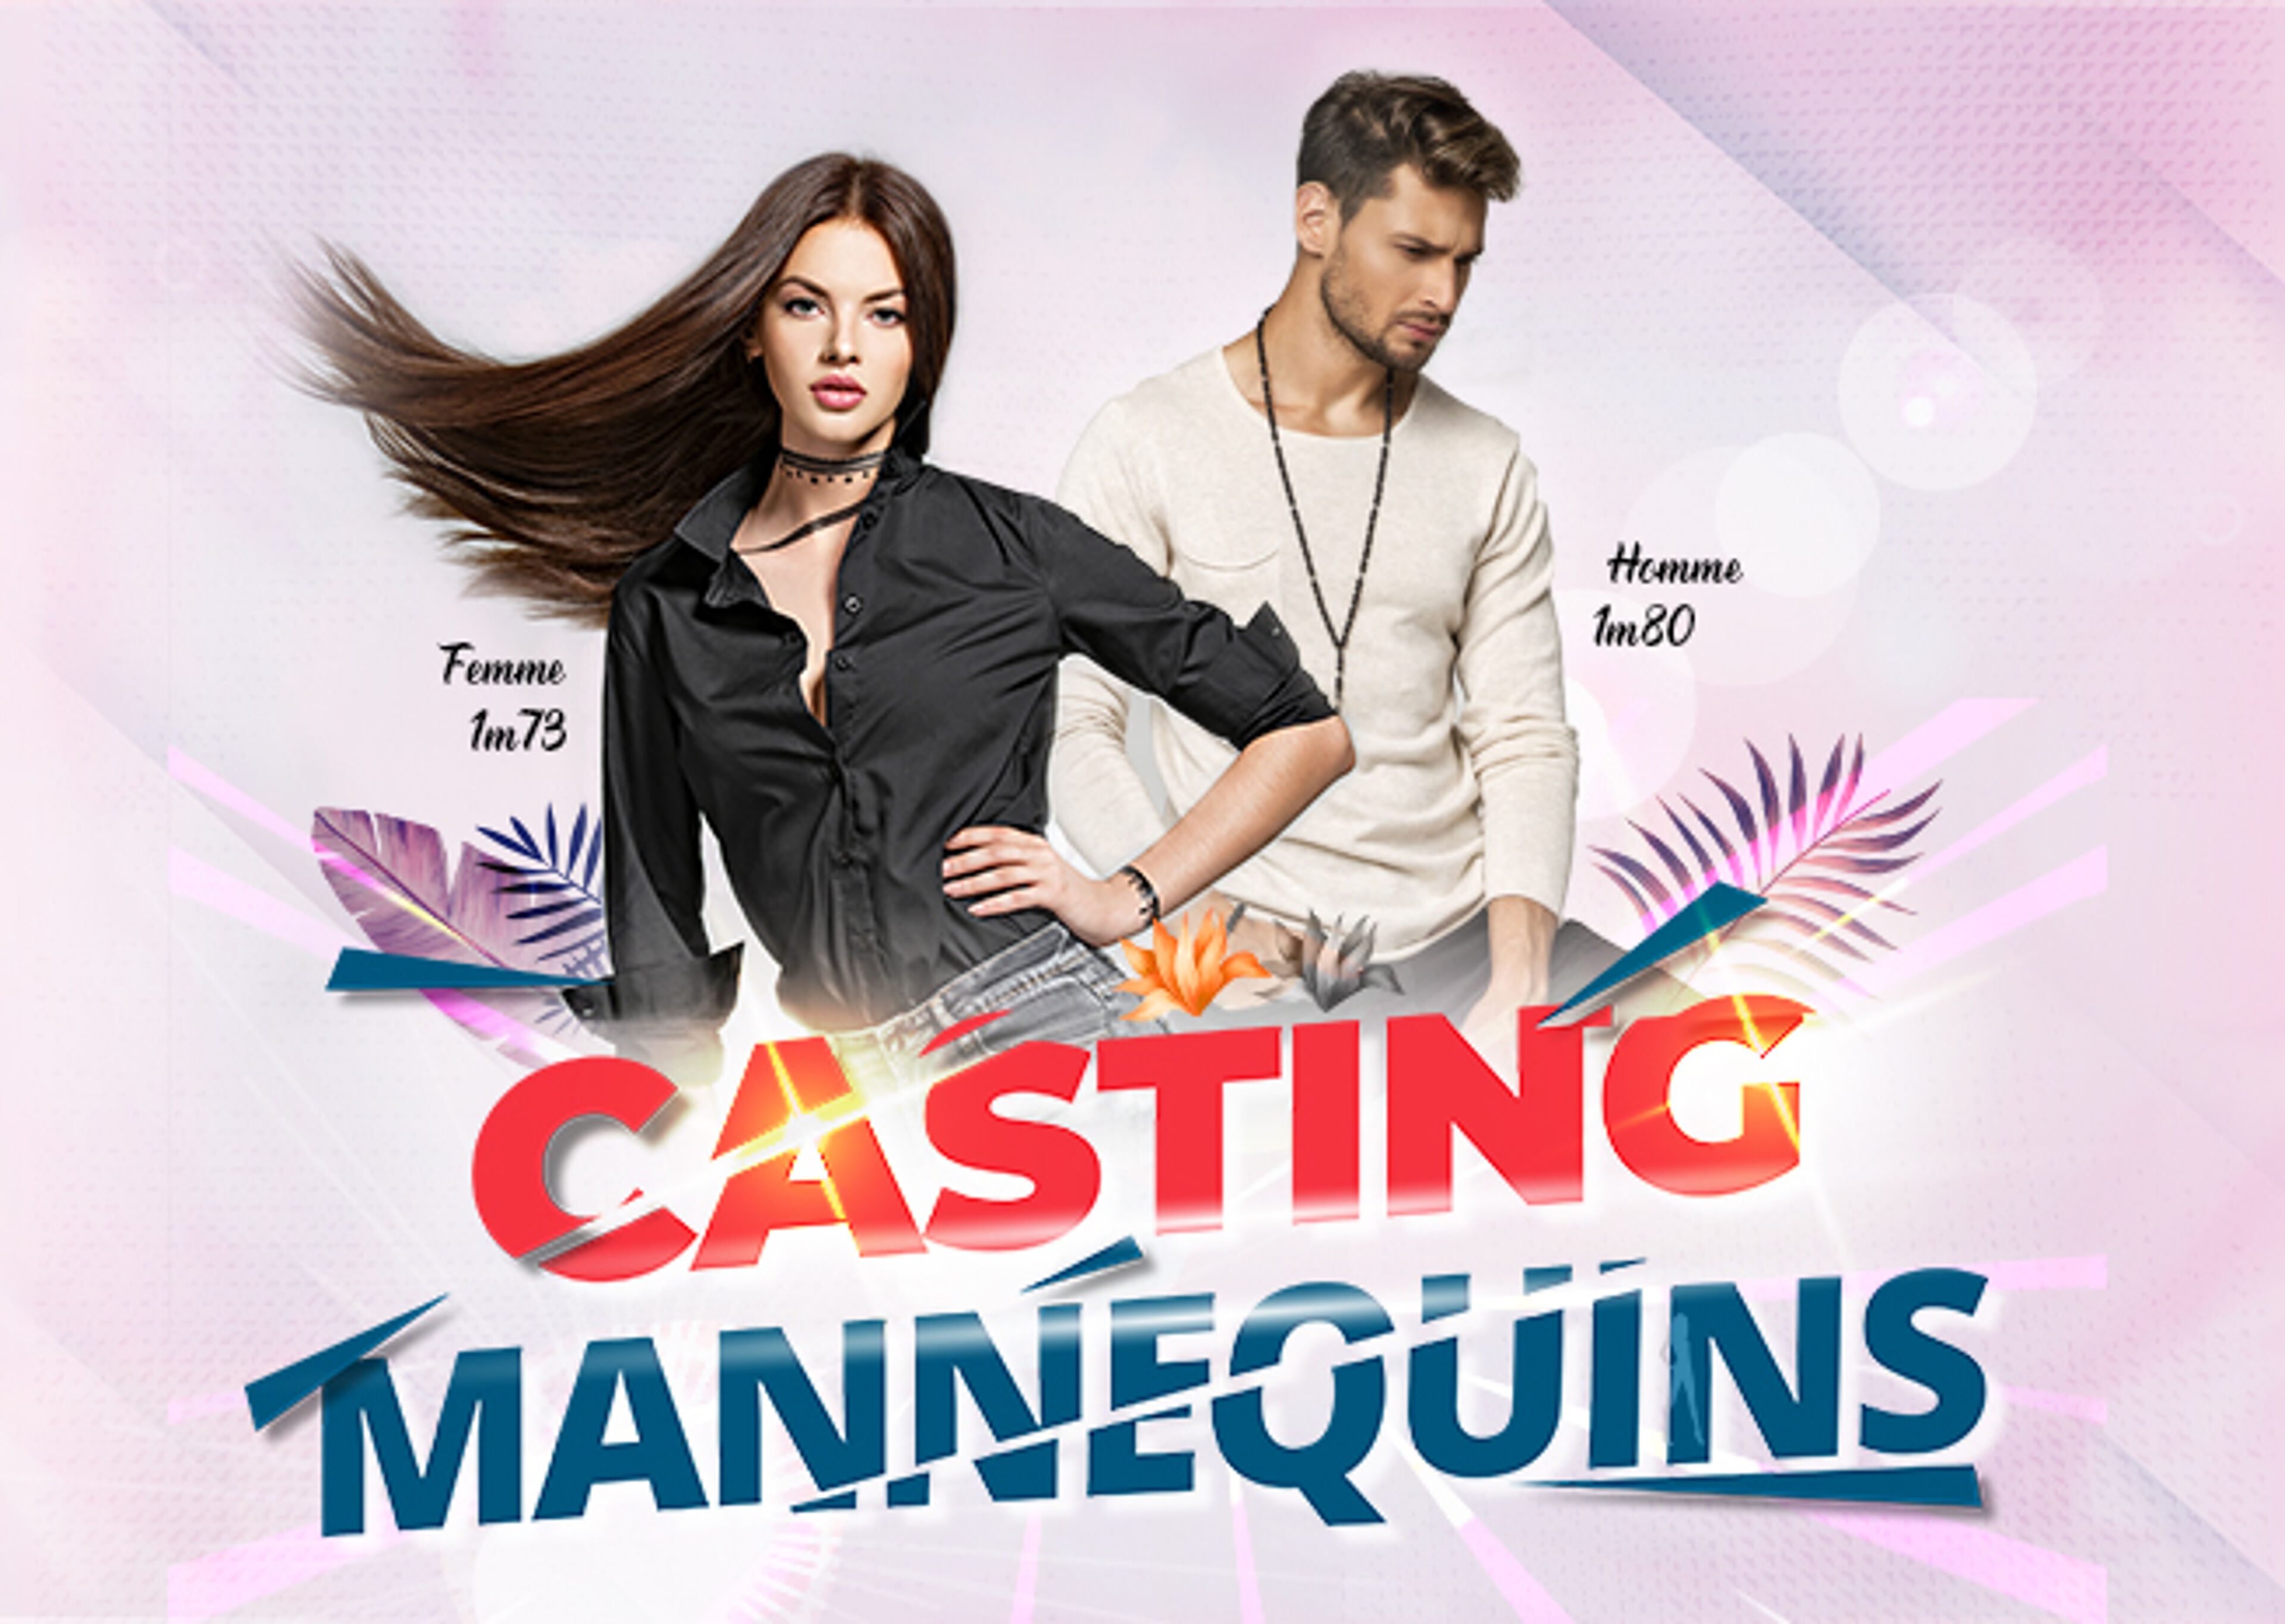 Publicité pour un casting présentant un homme et une femme mannequins stylés, avec mention des tailles requises.